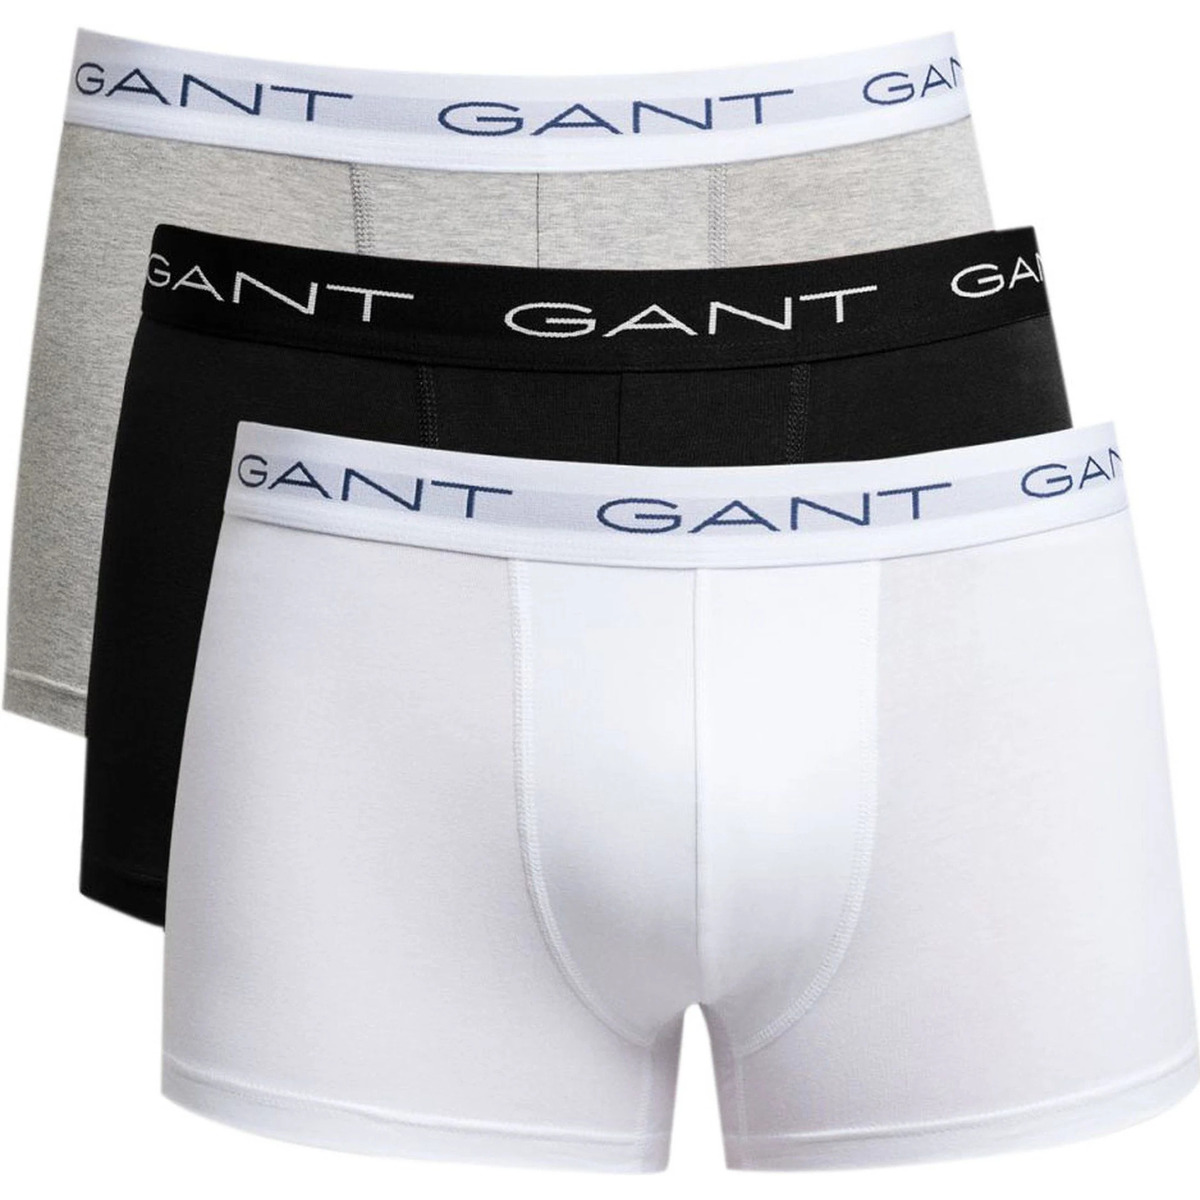 Gant Noir Boxer-shorts Lot de 3 Trunk Multicolores 5kffwIWn